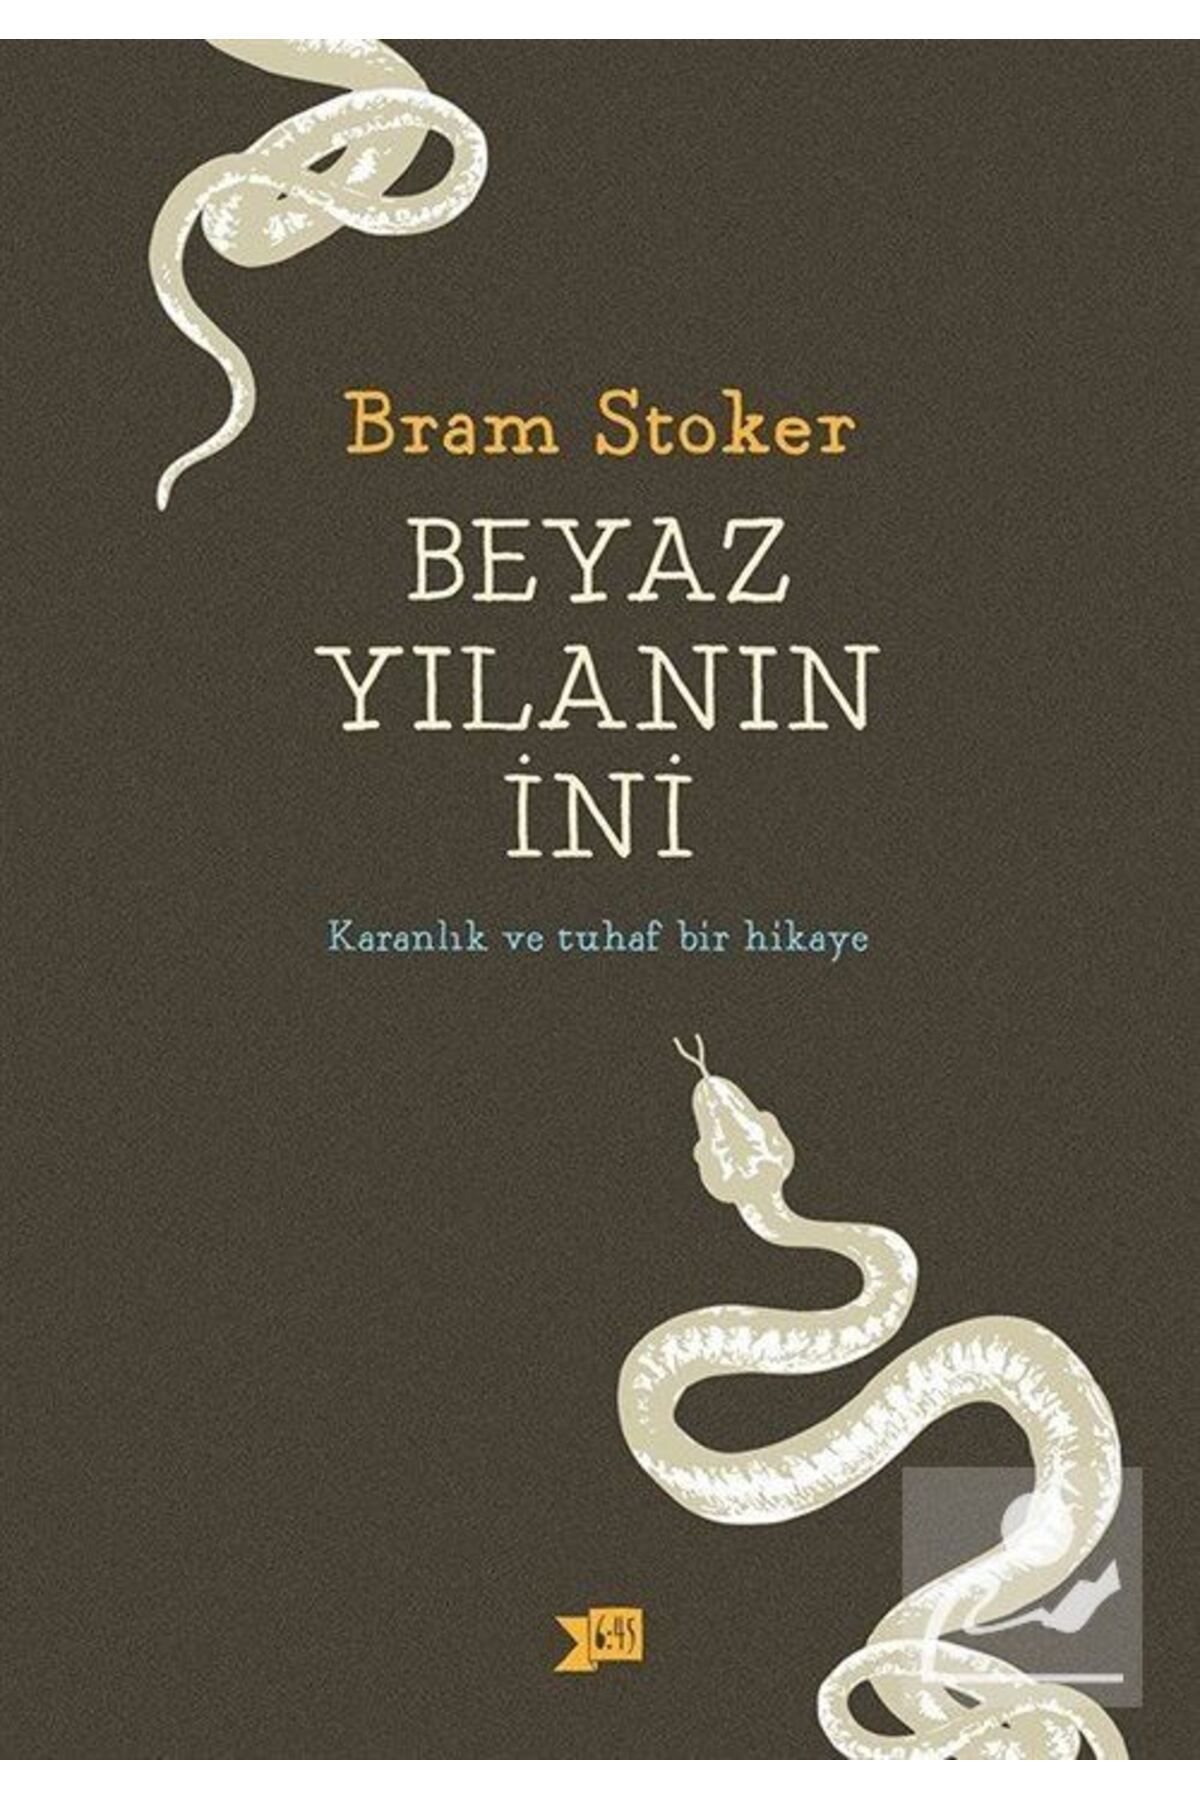 Altıkırkbeş Yayınları Beyaz Yılanın Ini, Bram Stoker, , Beyaz Yılanın Ini Kitabı, 168 Sayfa